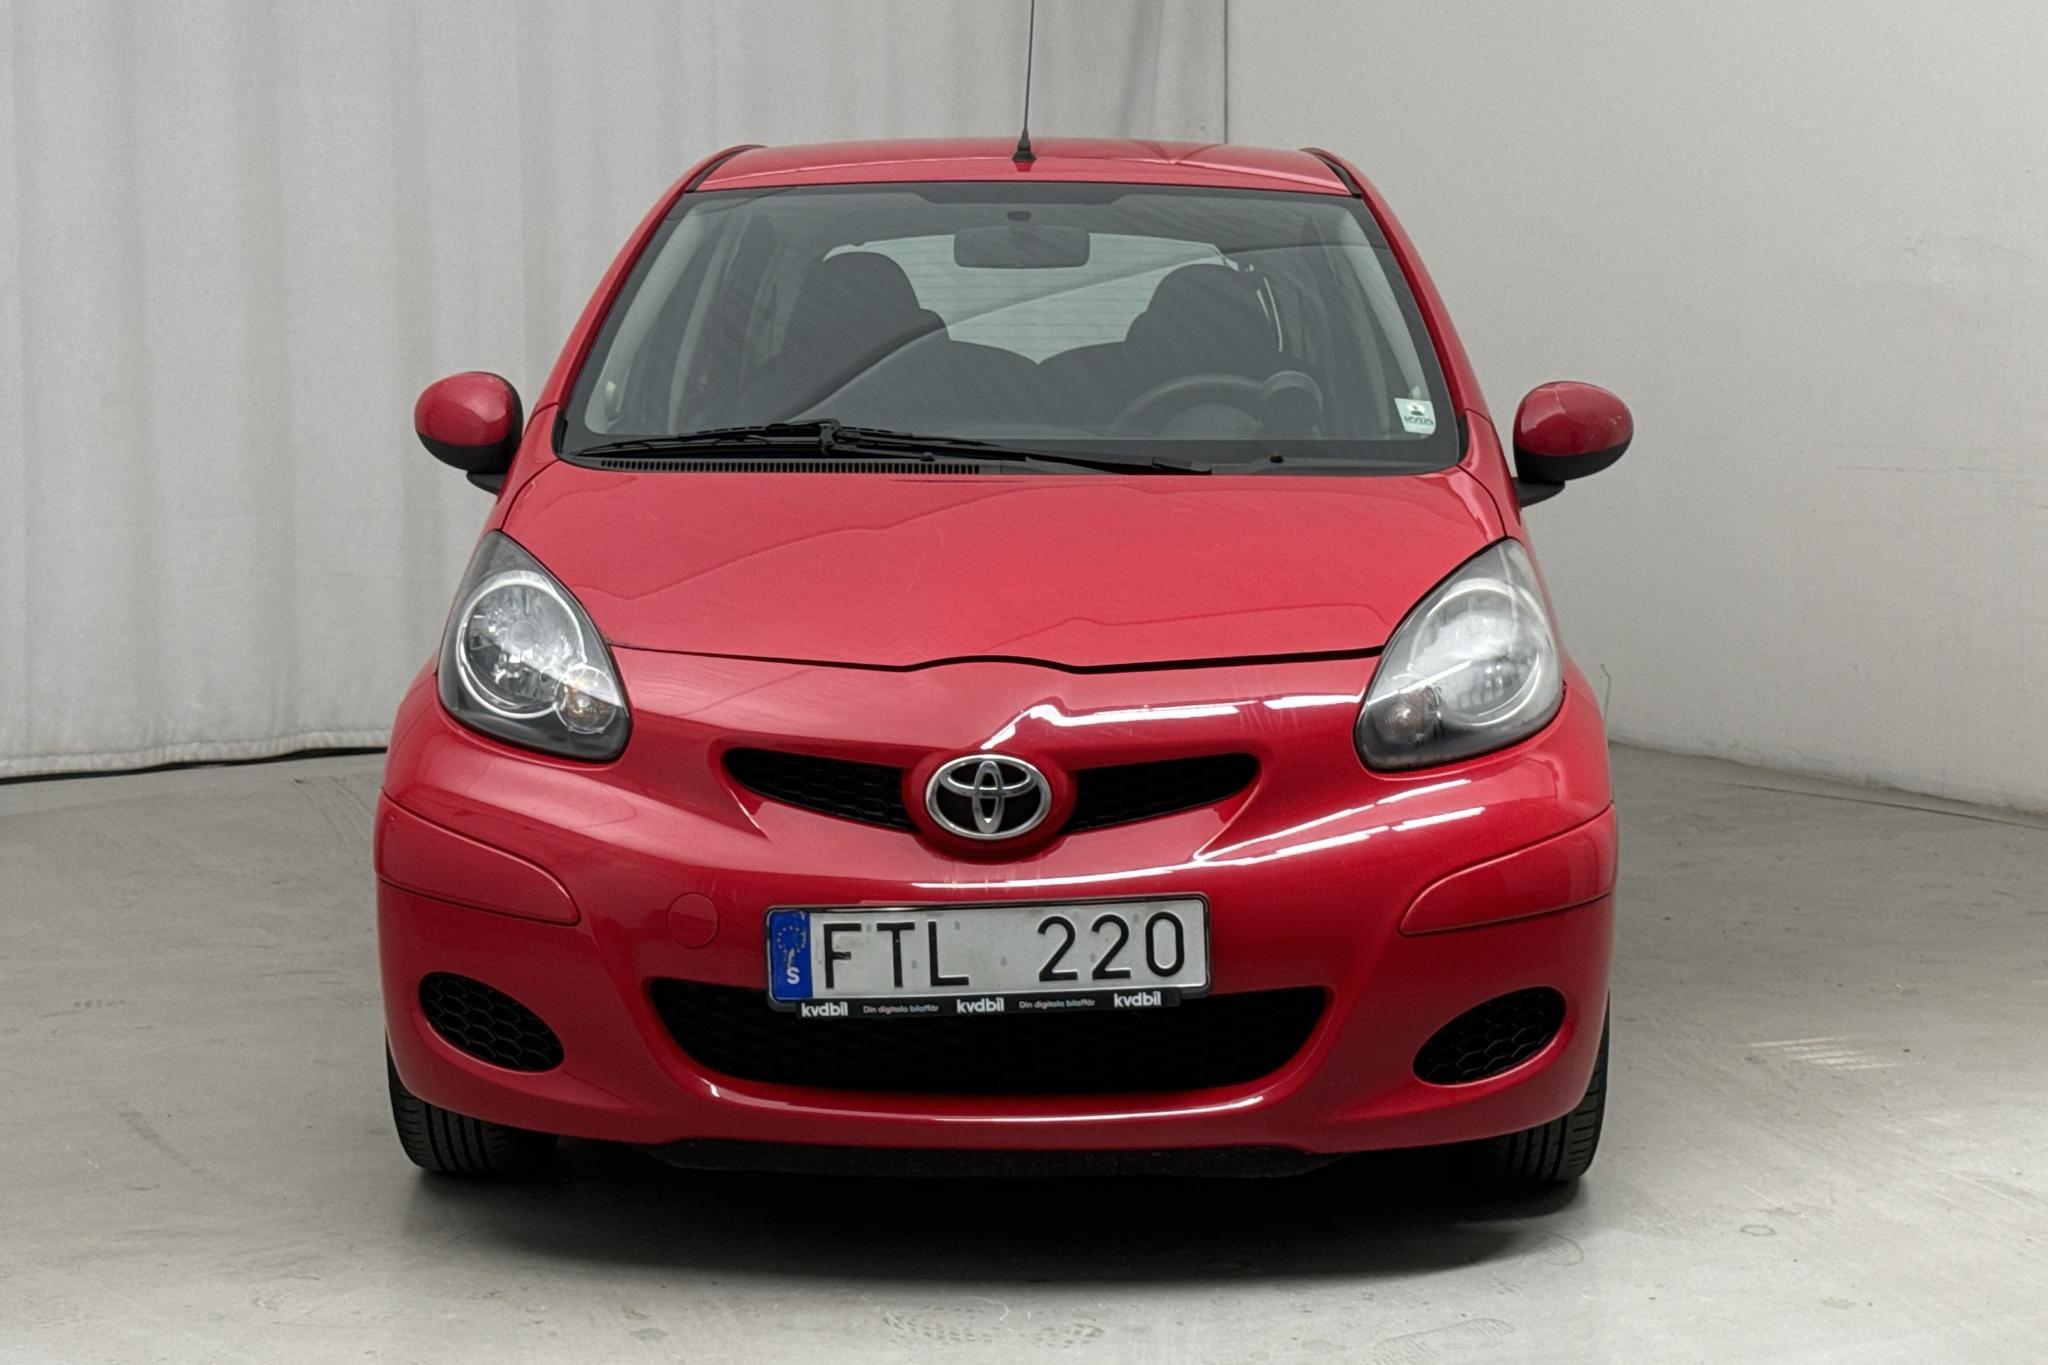 Toyota Aygo 1.0 VVT-i 5dr (68hk) - 10 673 mil - Manuell - röd - 2011